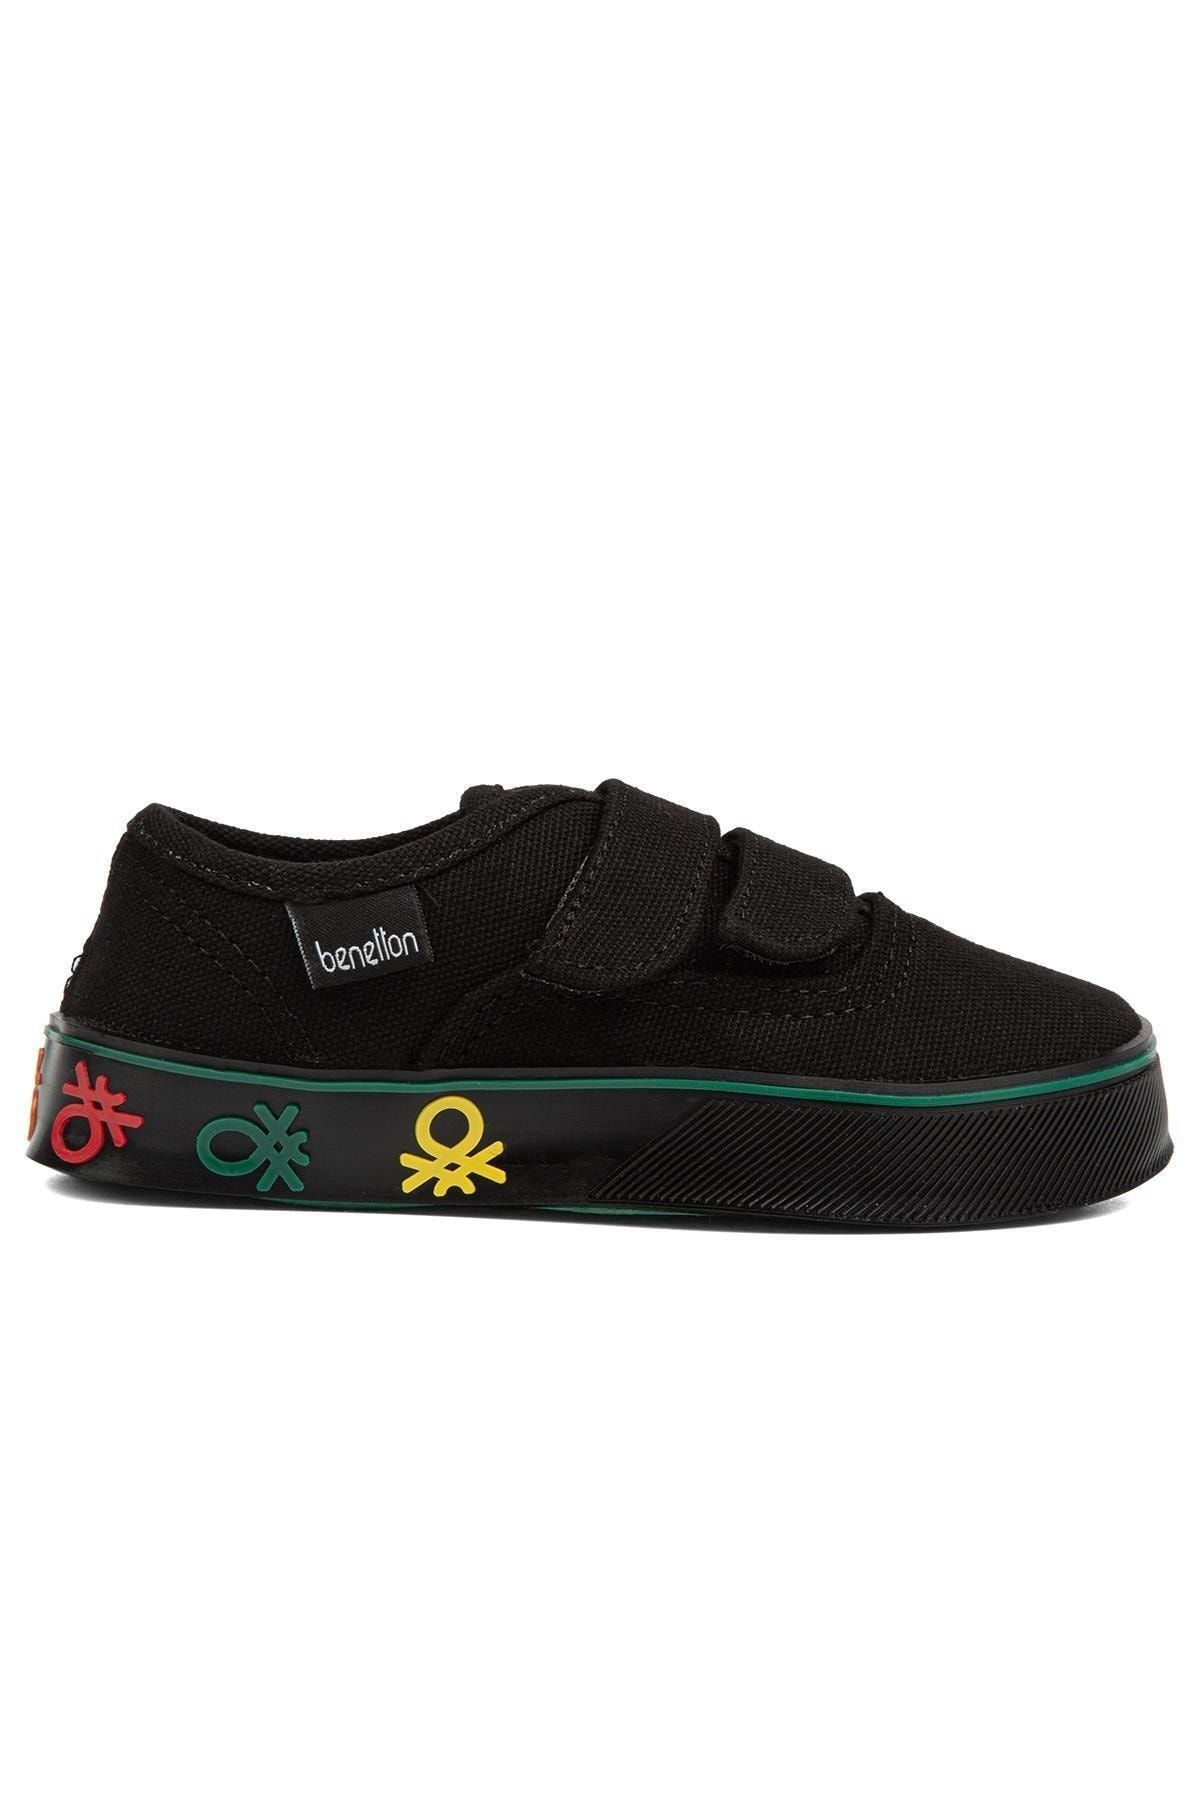 Benetton ® | BN-30959- Siyah - Çocuk Spor Ayakkabı